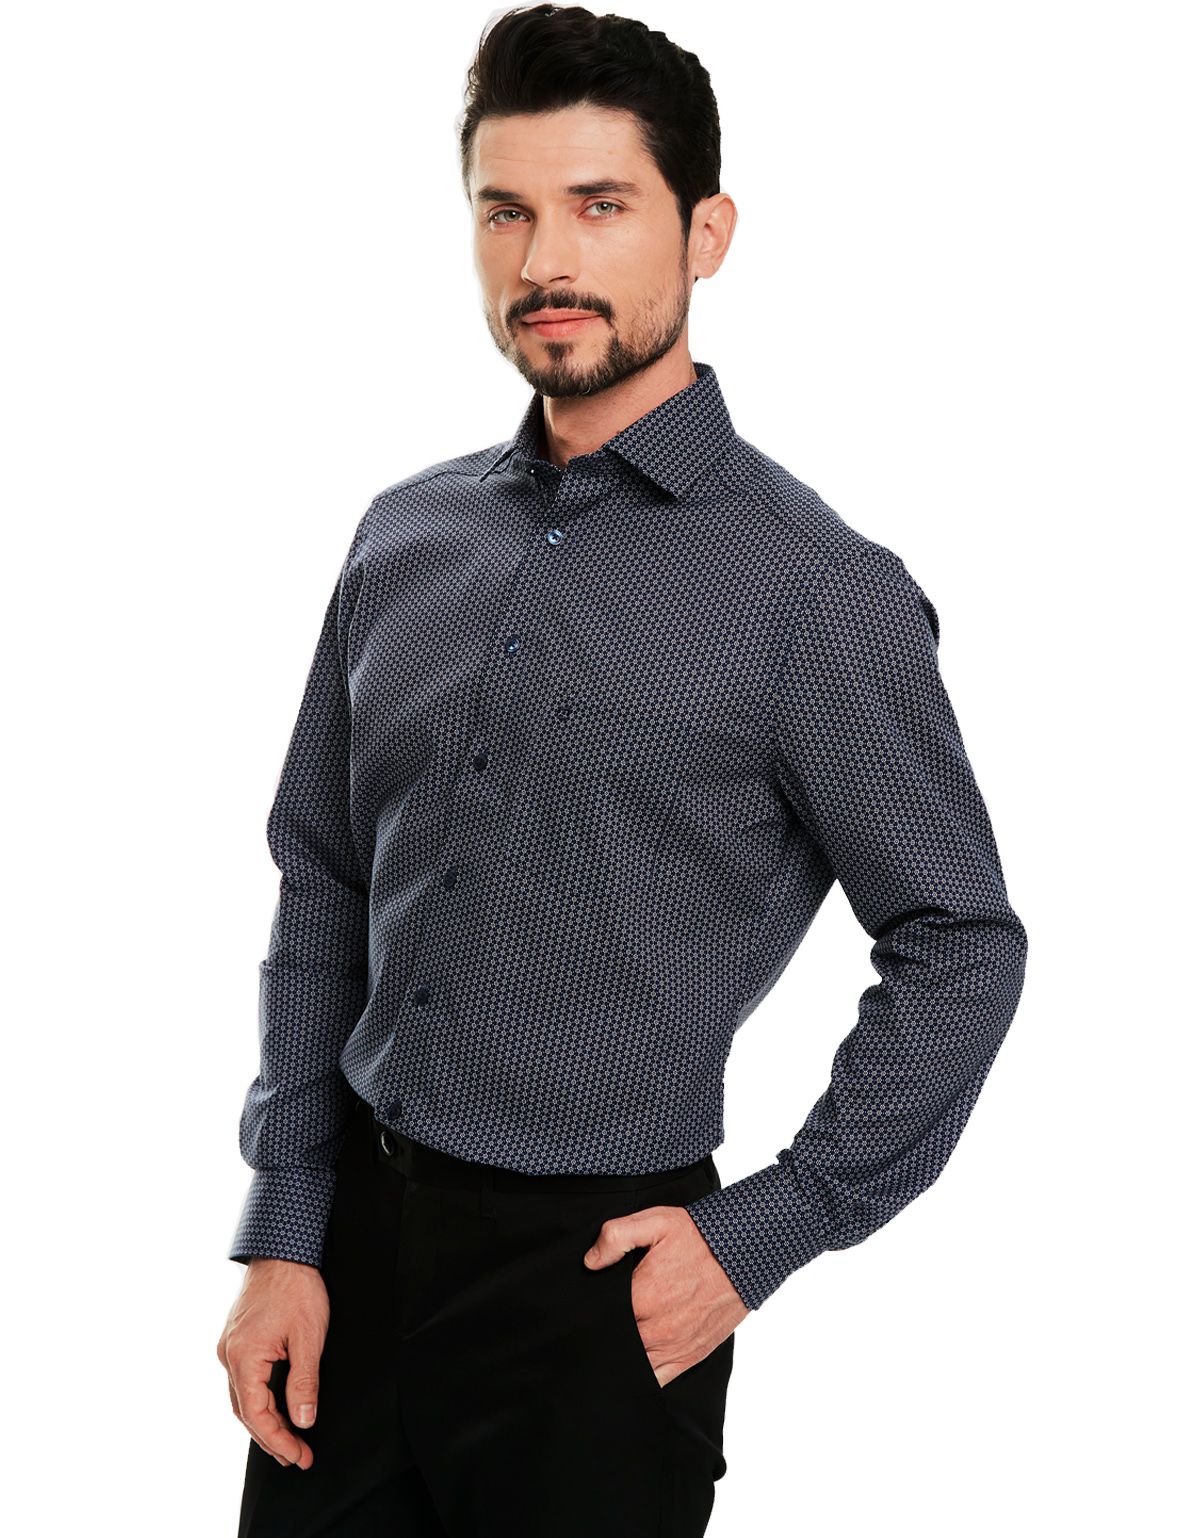 Рубашка мужская классическая с рисунком OLYMP Luxor, modern fit[Синий]